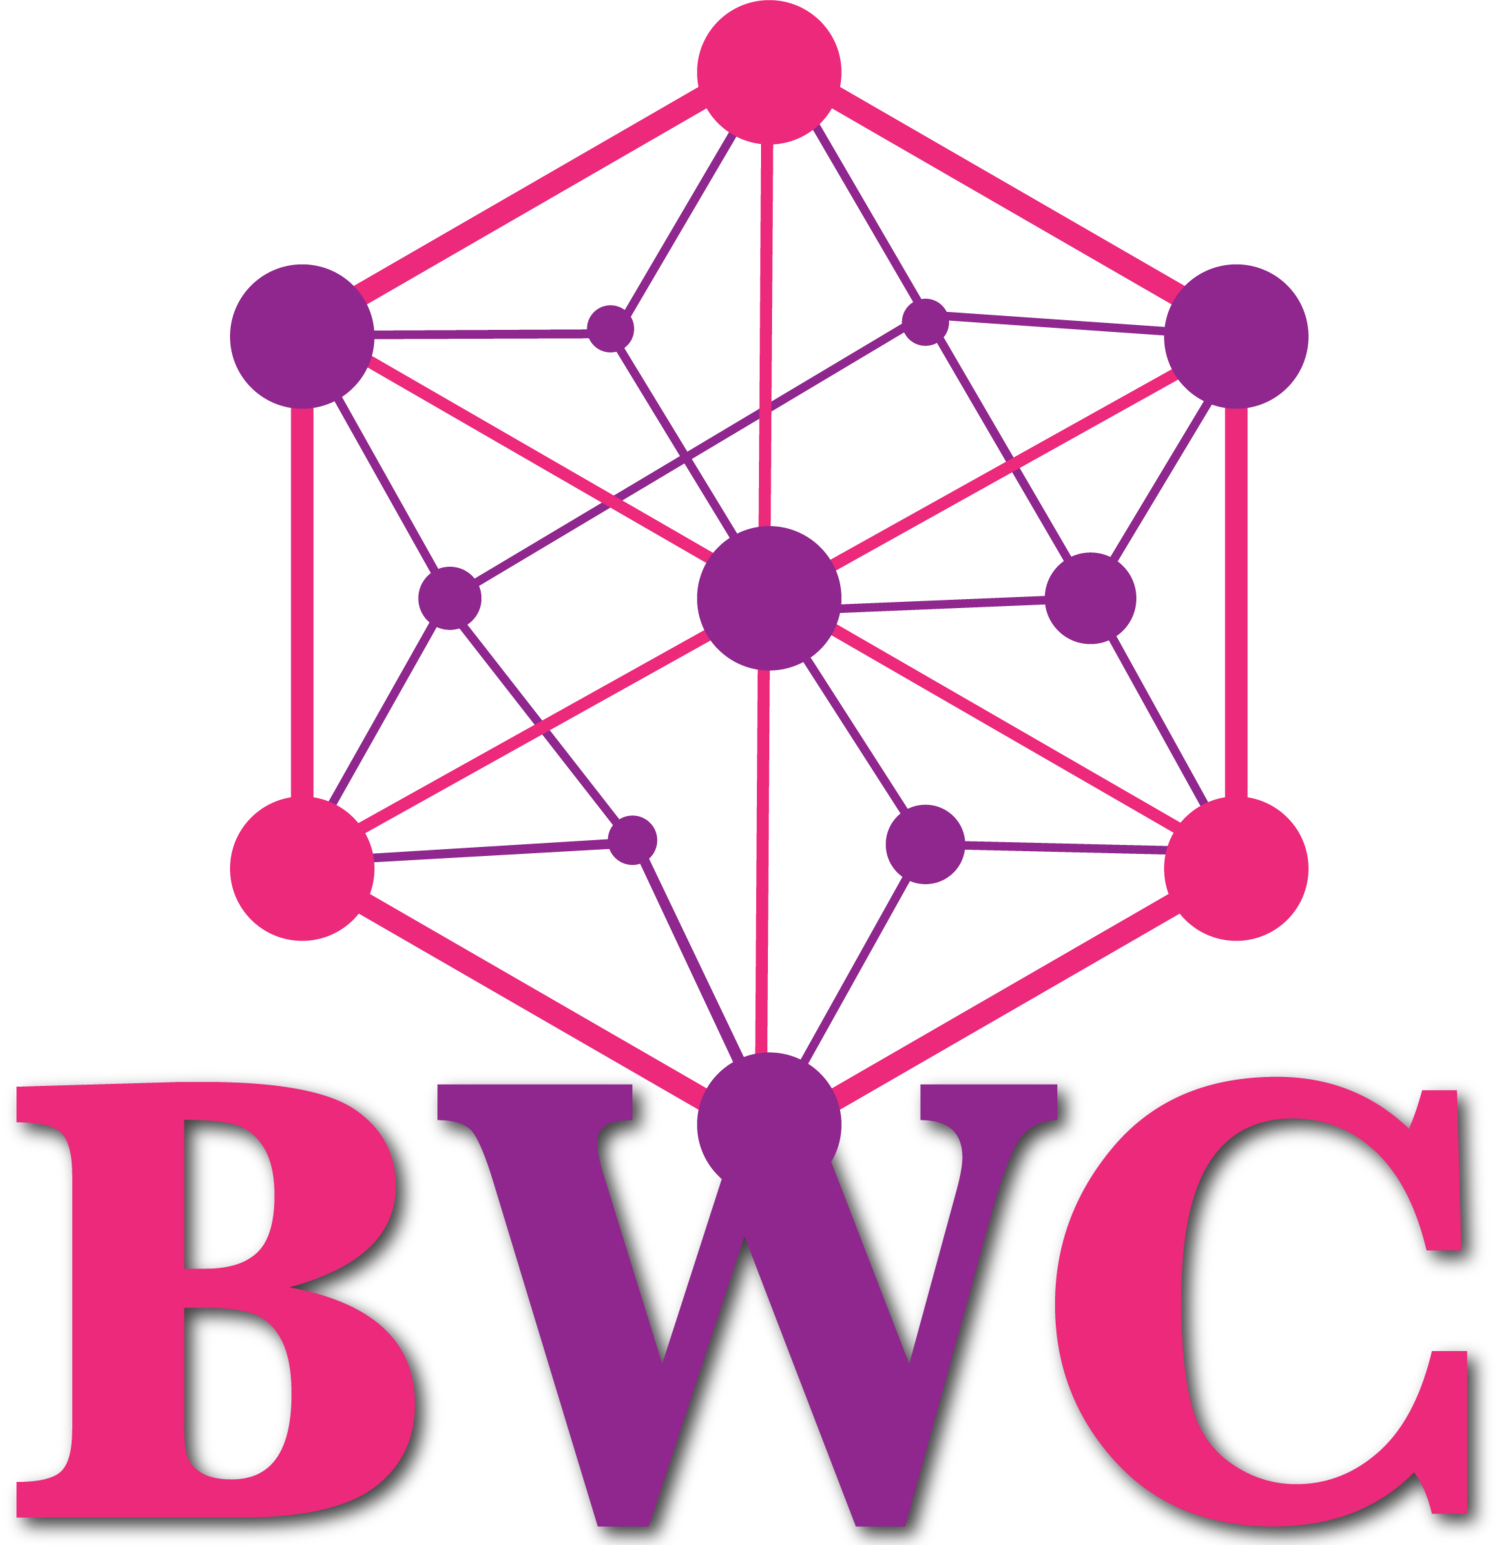 BWC Glasgow